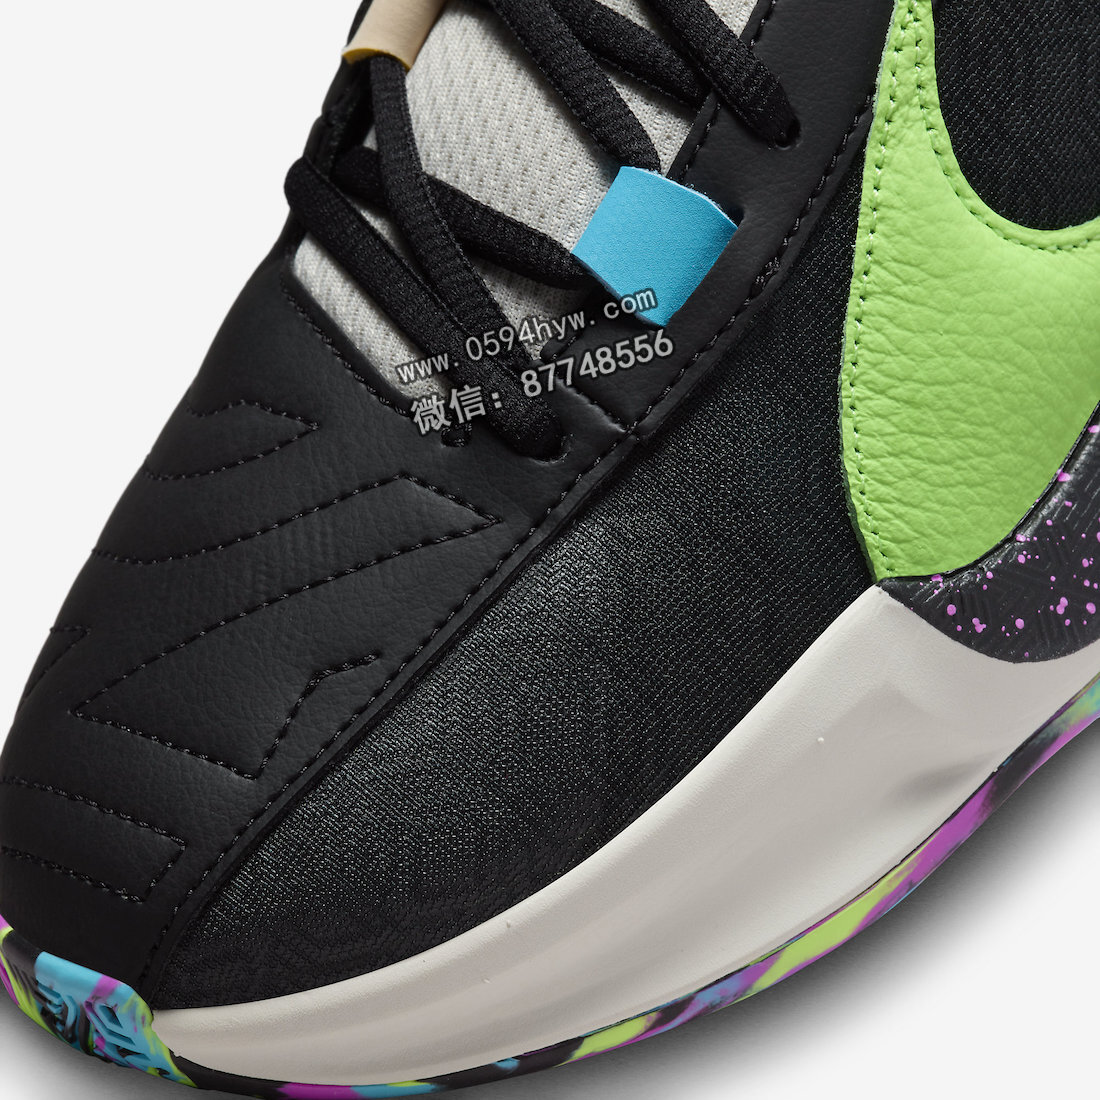 耐克Zoom, 耐克, 篮球鞋, Zoom, Nike Zoom Freak 5 “Made in Sepolia”, DX4985-002